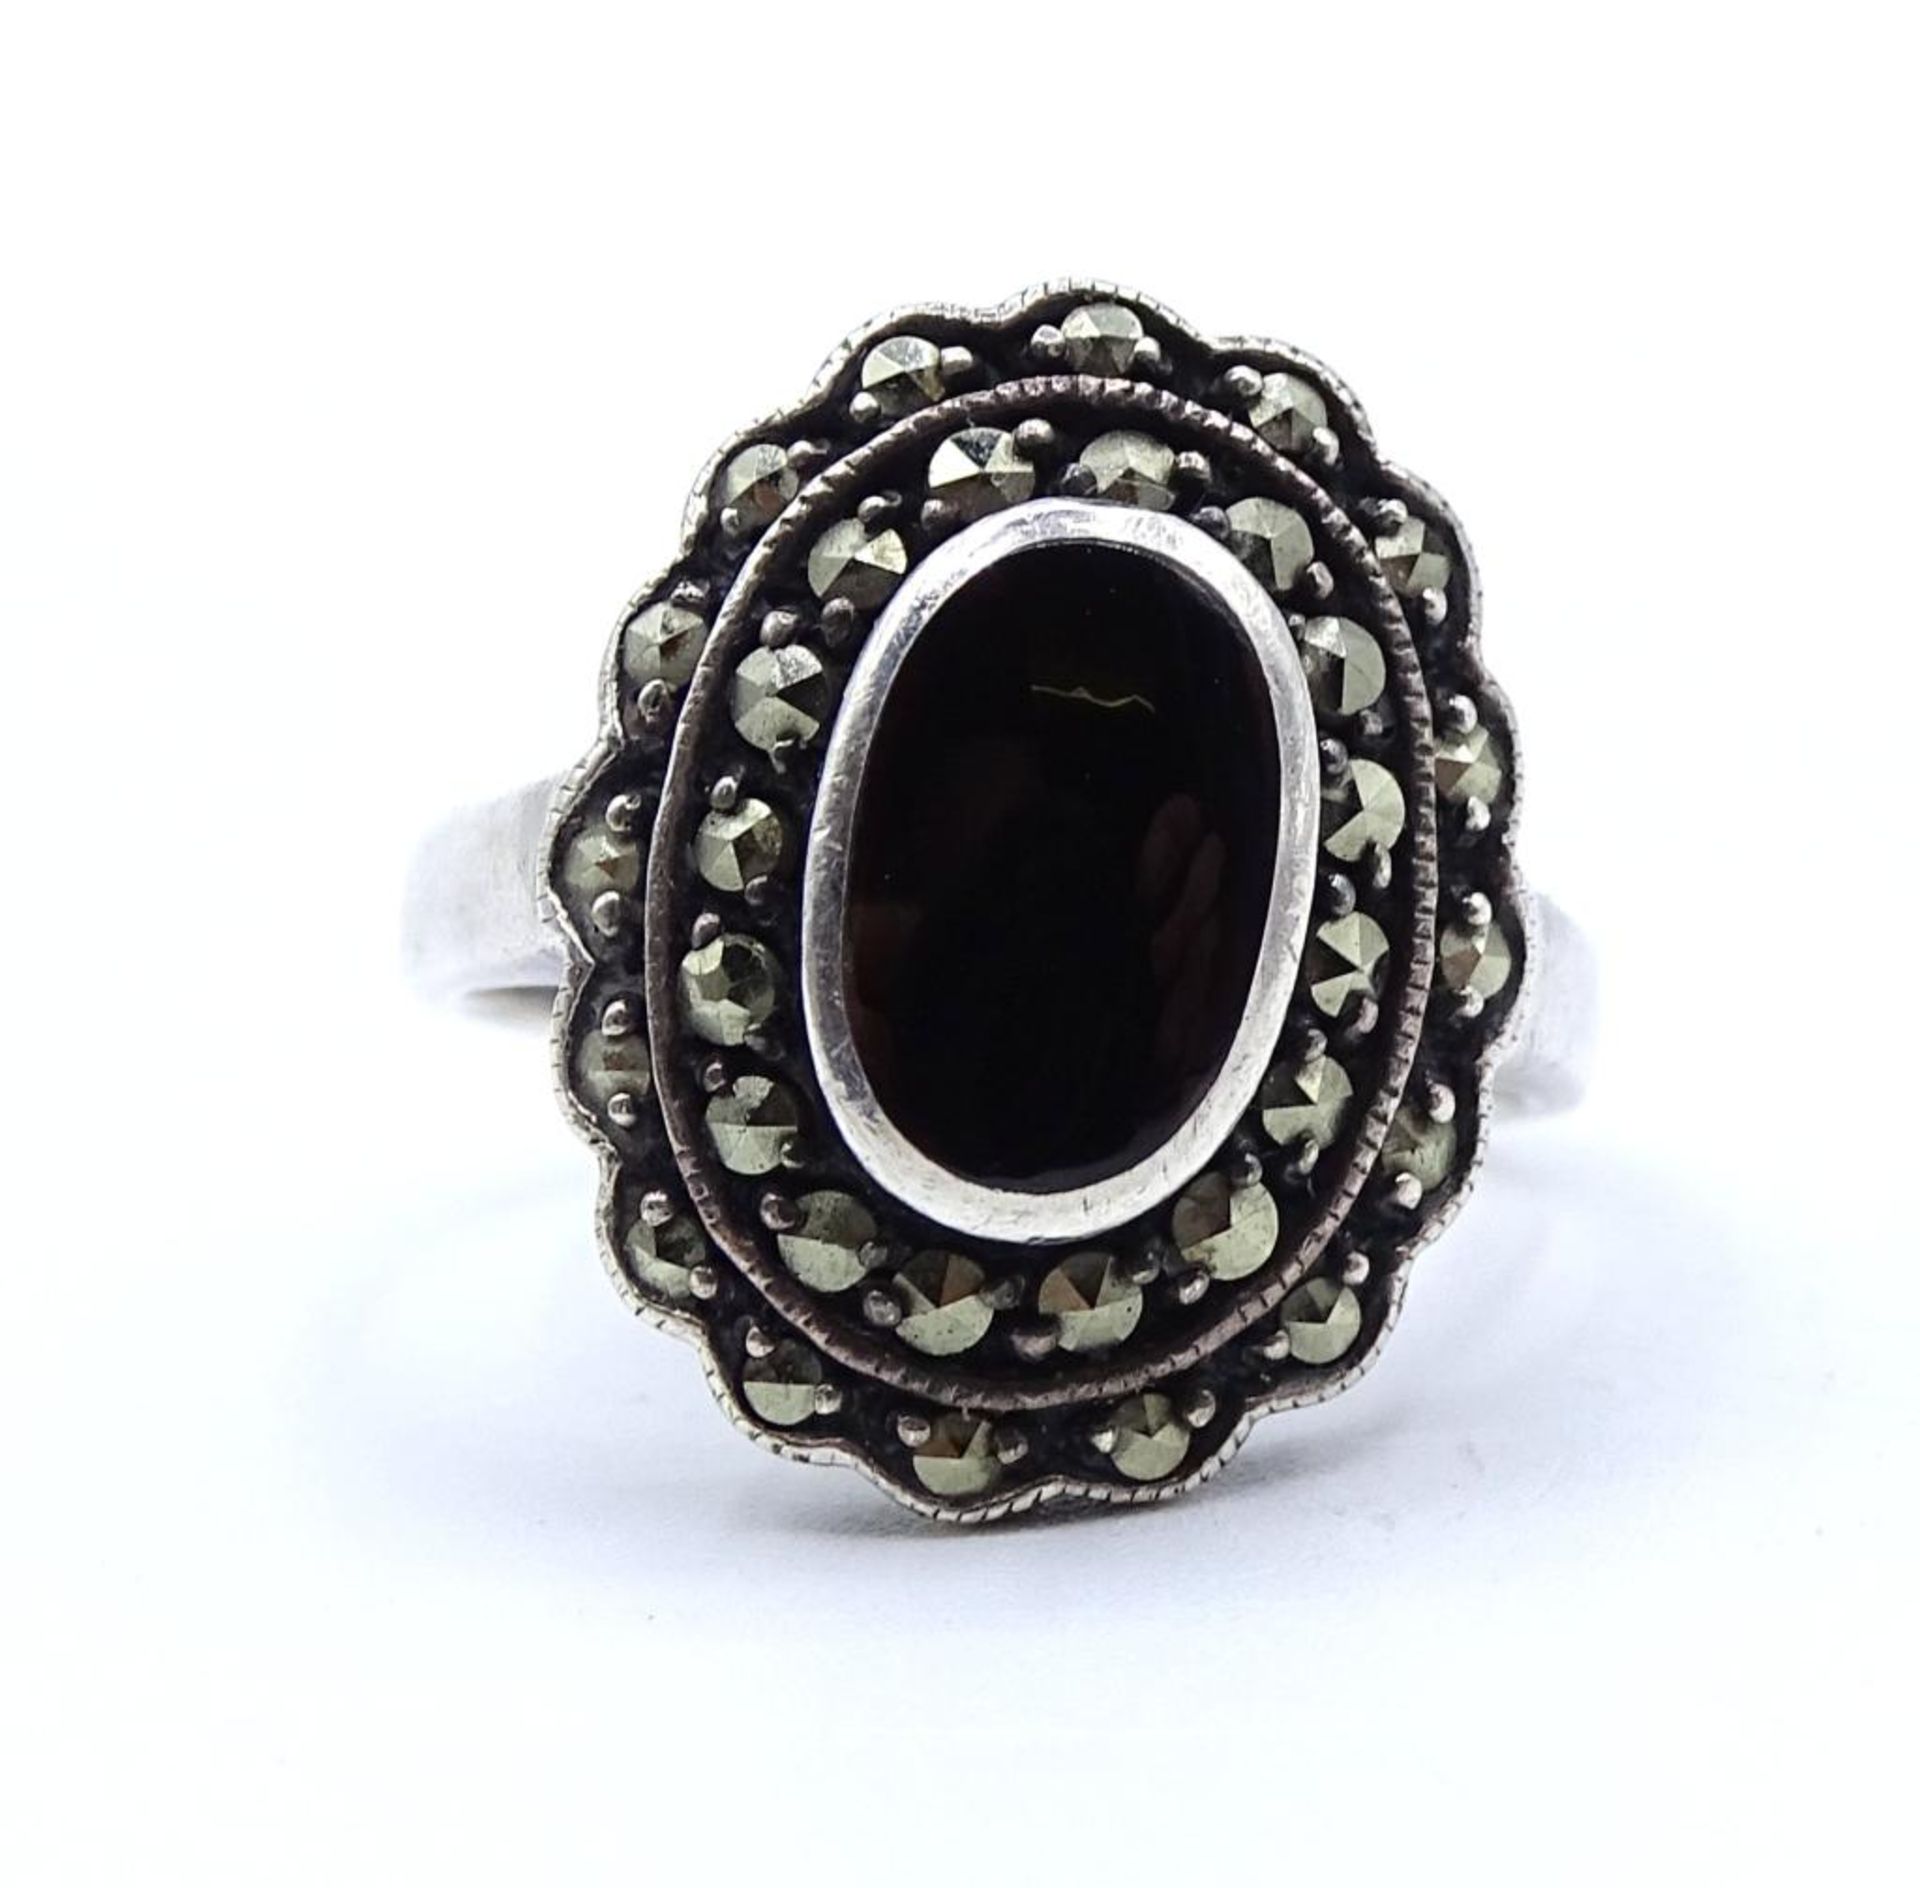 Markasiten Silber Ring mit einen schwarzen Stein in ovaler Form, 5,2gr., Silber 925/000,RG 52 - Image 2 of 4